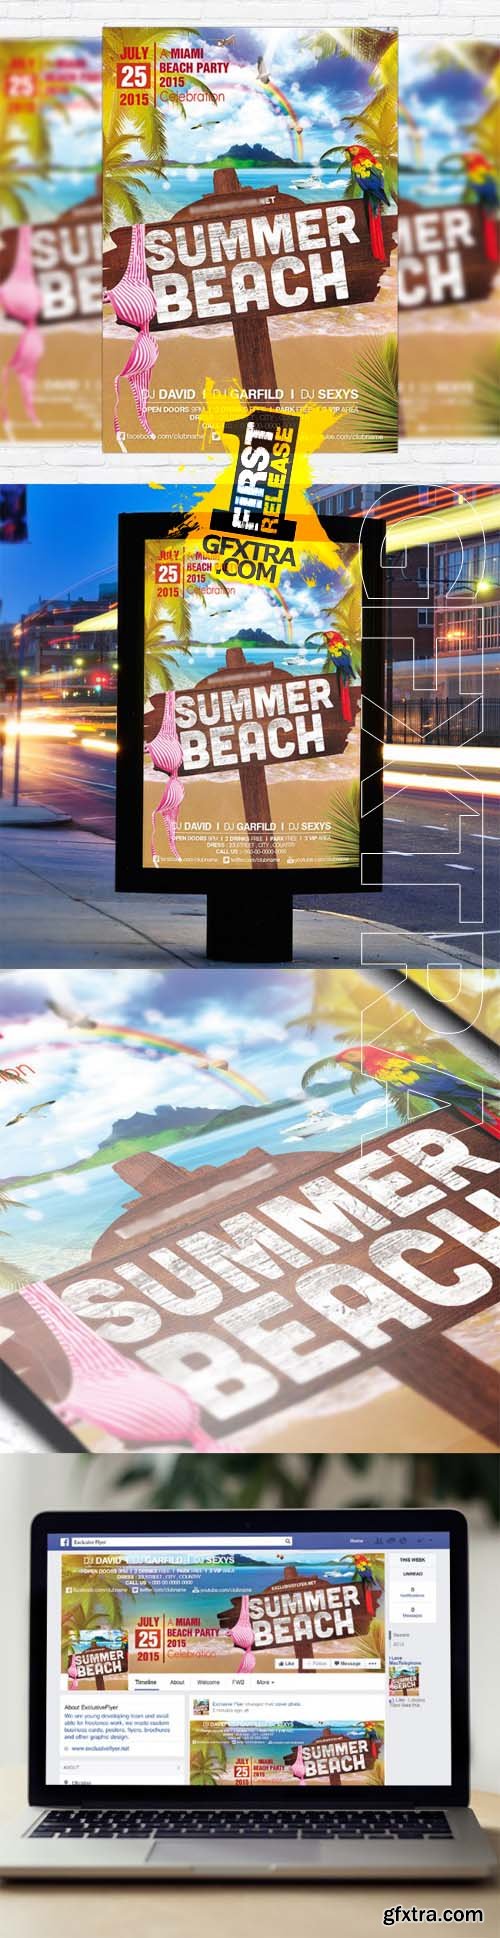 Summer Beach Vol 2 - Flyer Template + Facebook Cover